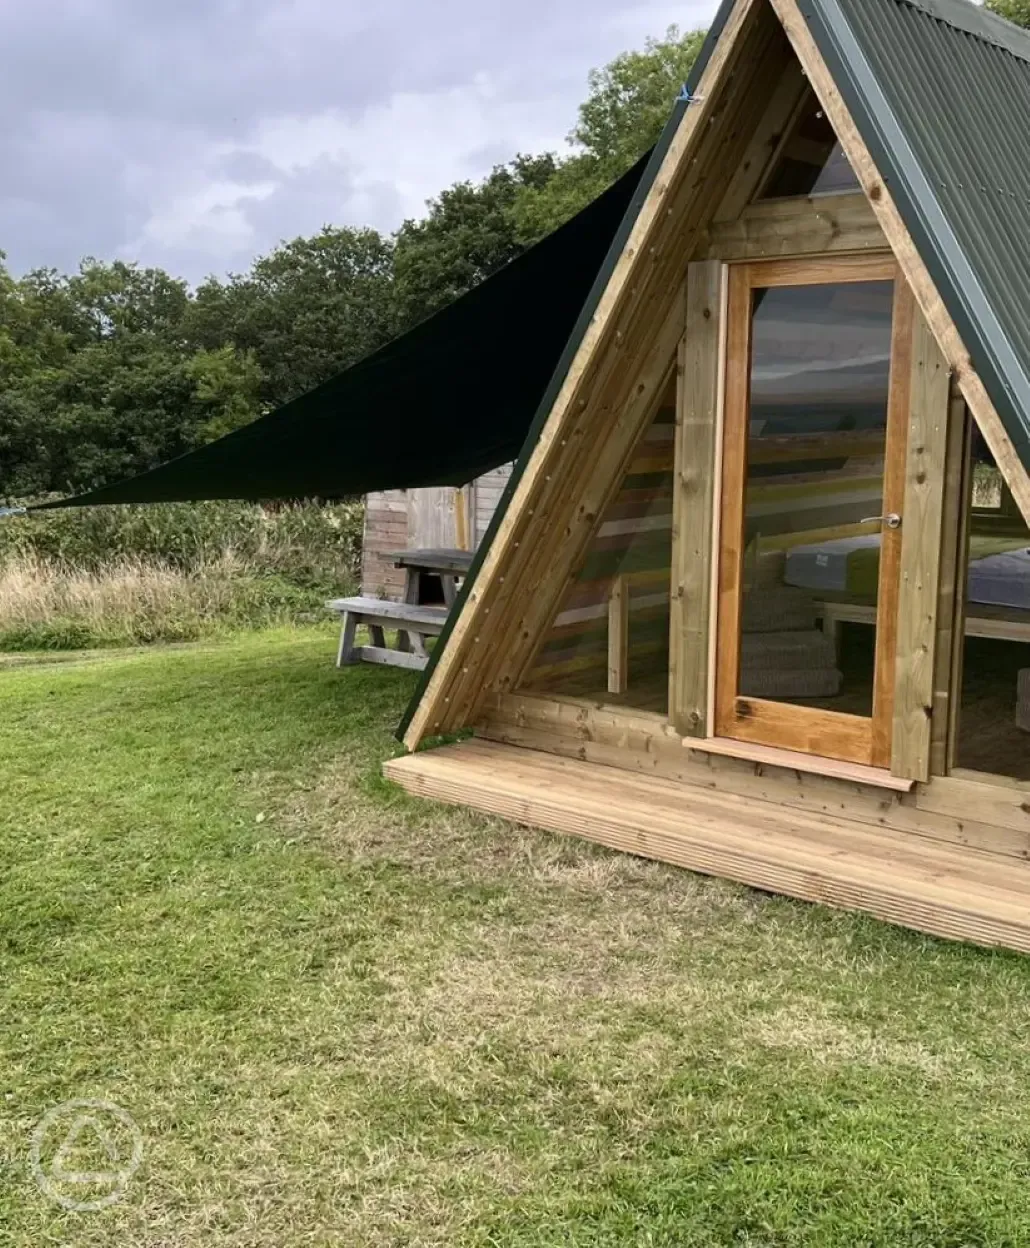 A frame cabin